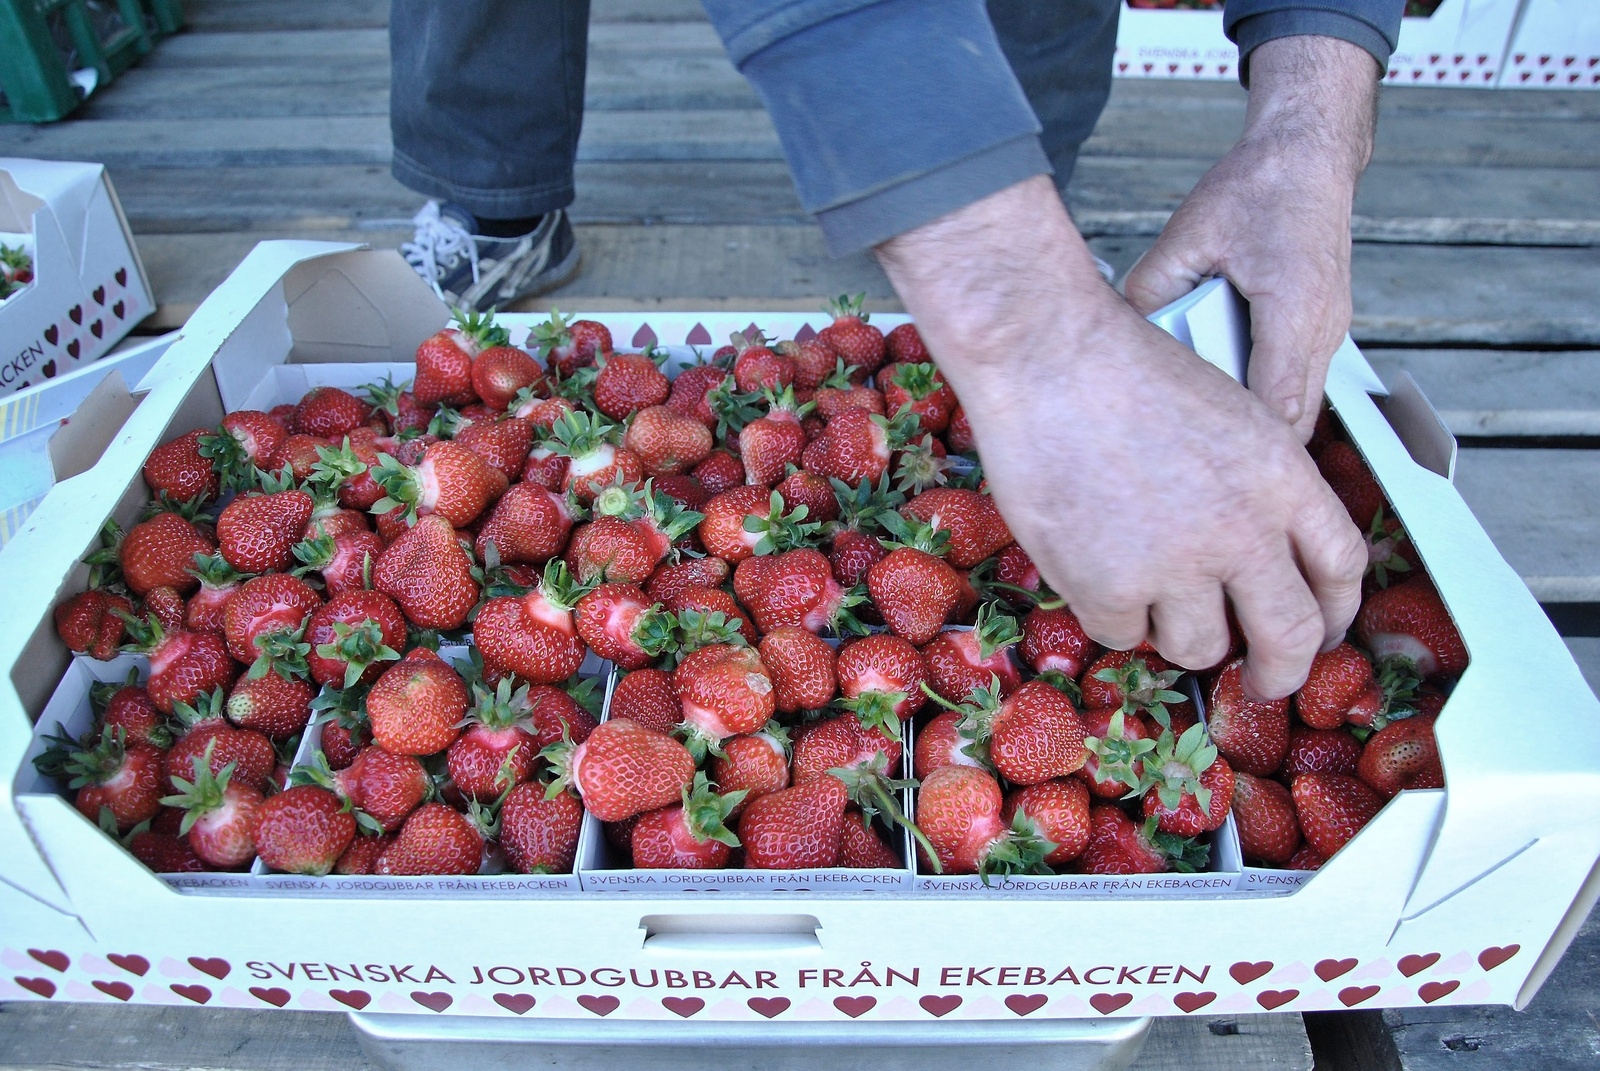 Lådan gås snabbt igenom för att se att jordgubbarna håller den kvalitet de ska innan de säljs vidare.           Foto: Robert Rolf